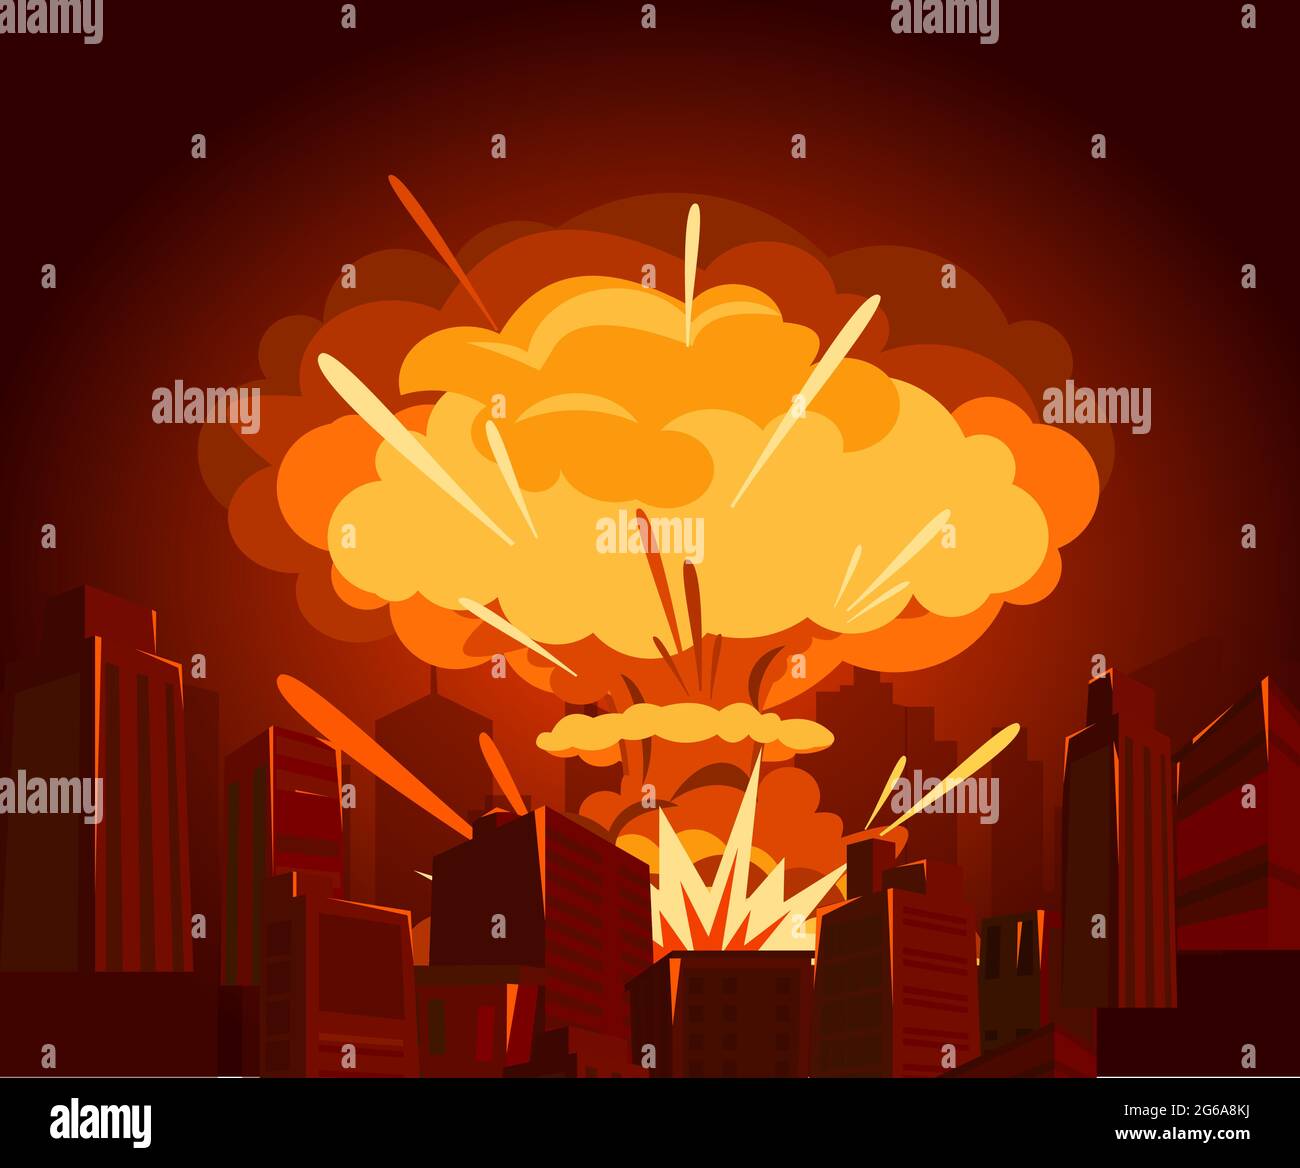 Illustrazione vettoriale della bomba atomica in città. Concetto di guerra e fine del mondo in stile piatto. Pericoli dell'energia nucleare. Illustrazione Vettoriale